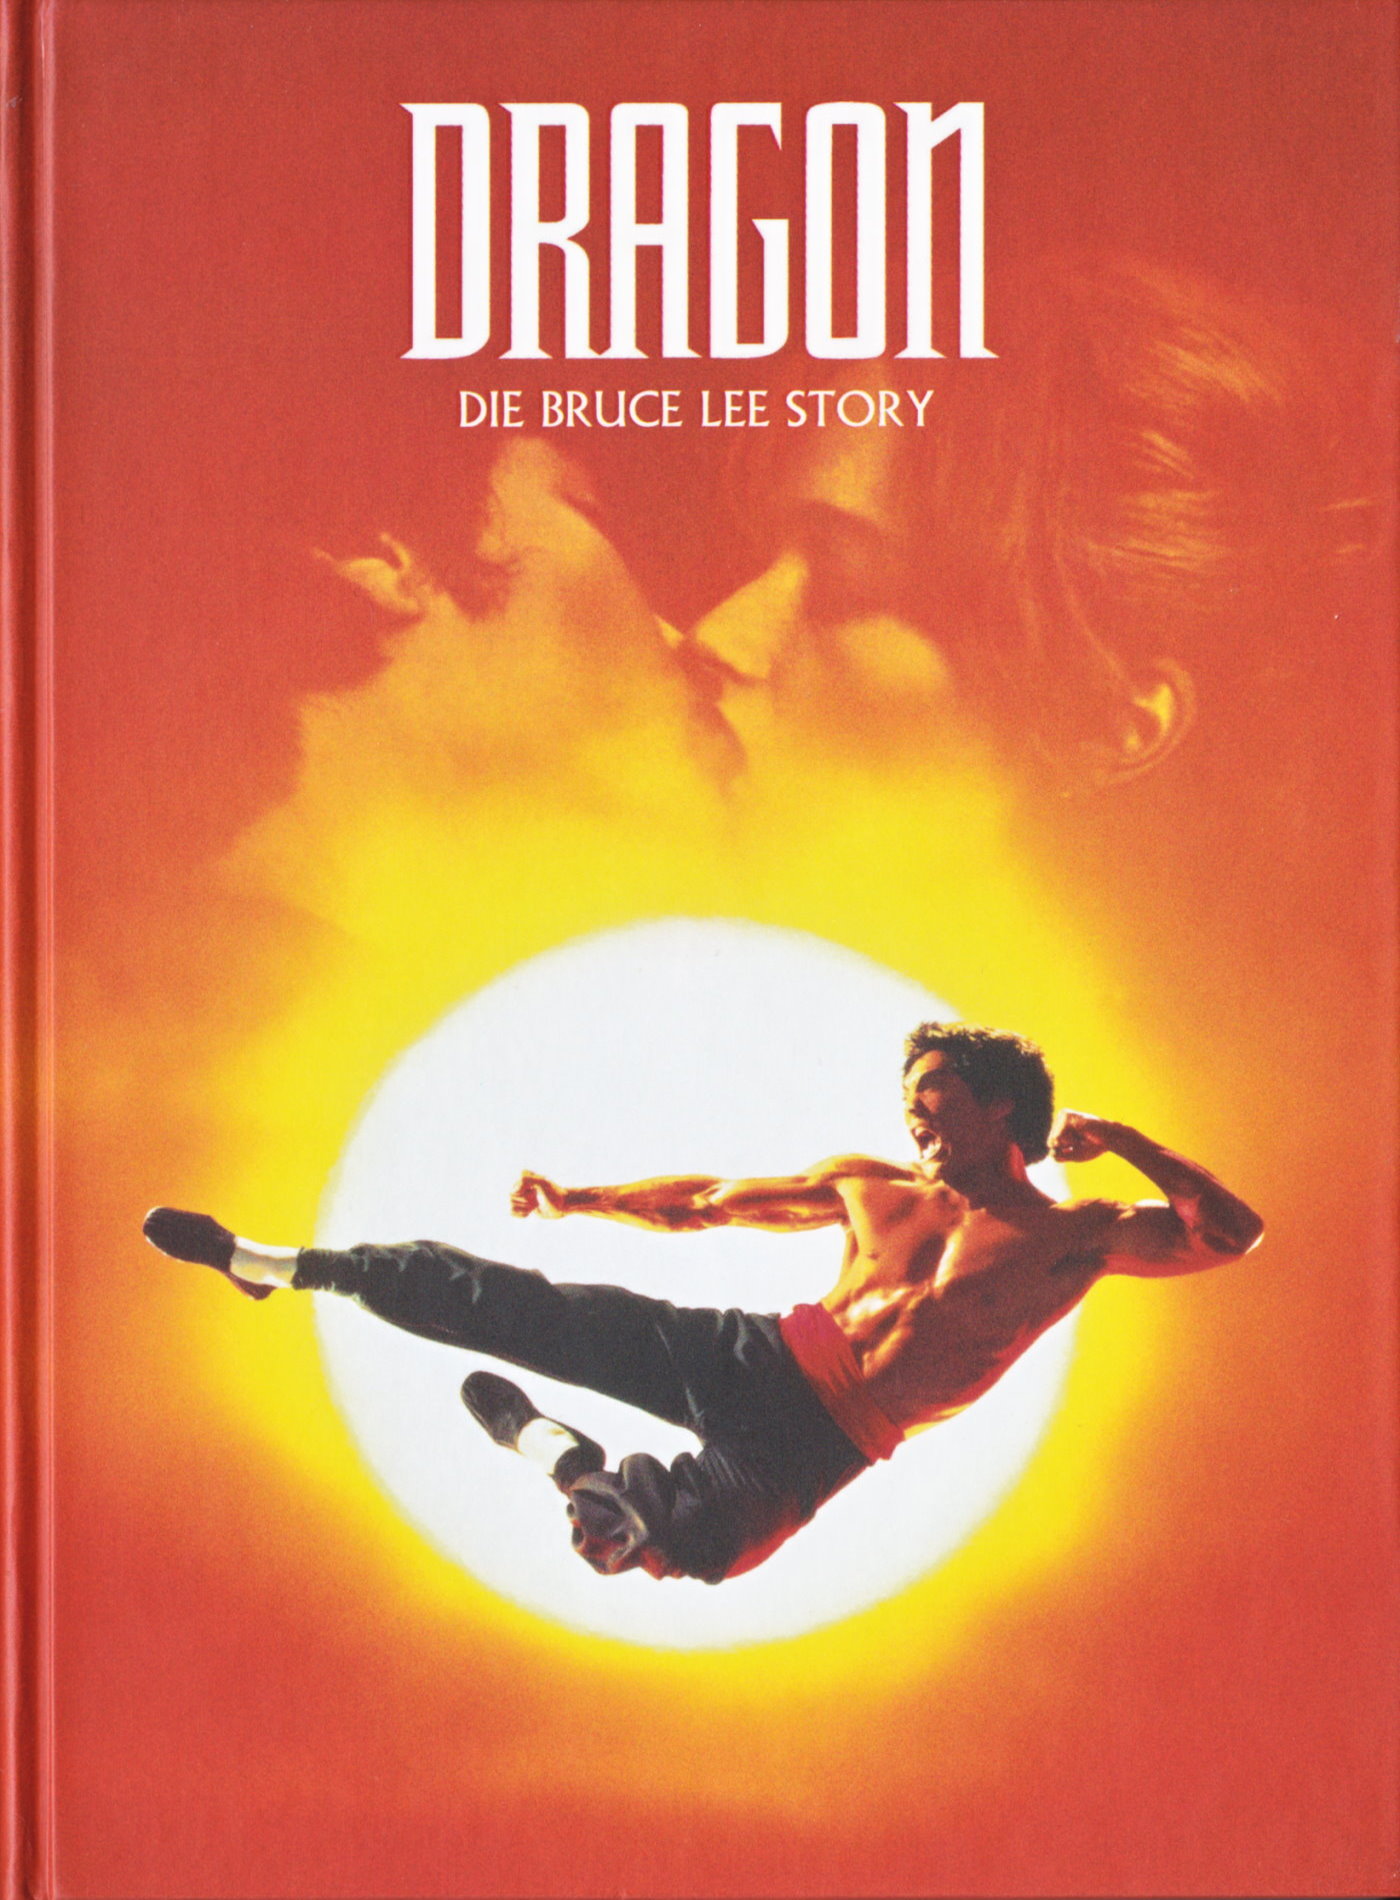 Cover - Dragon - Die Bruce Lee Story.jpg